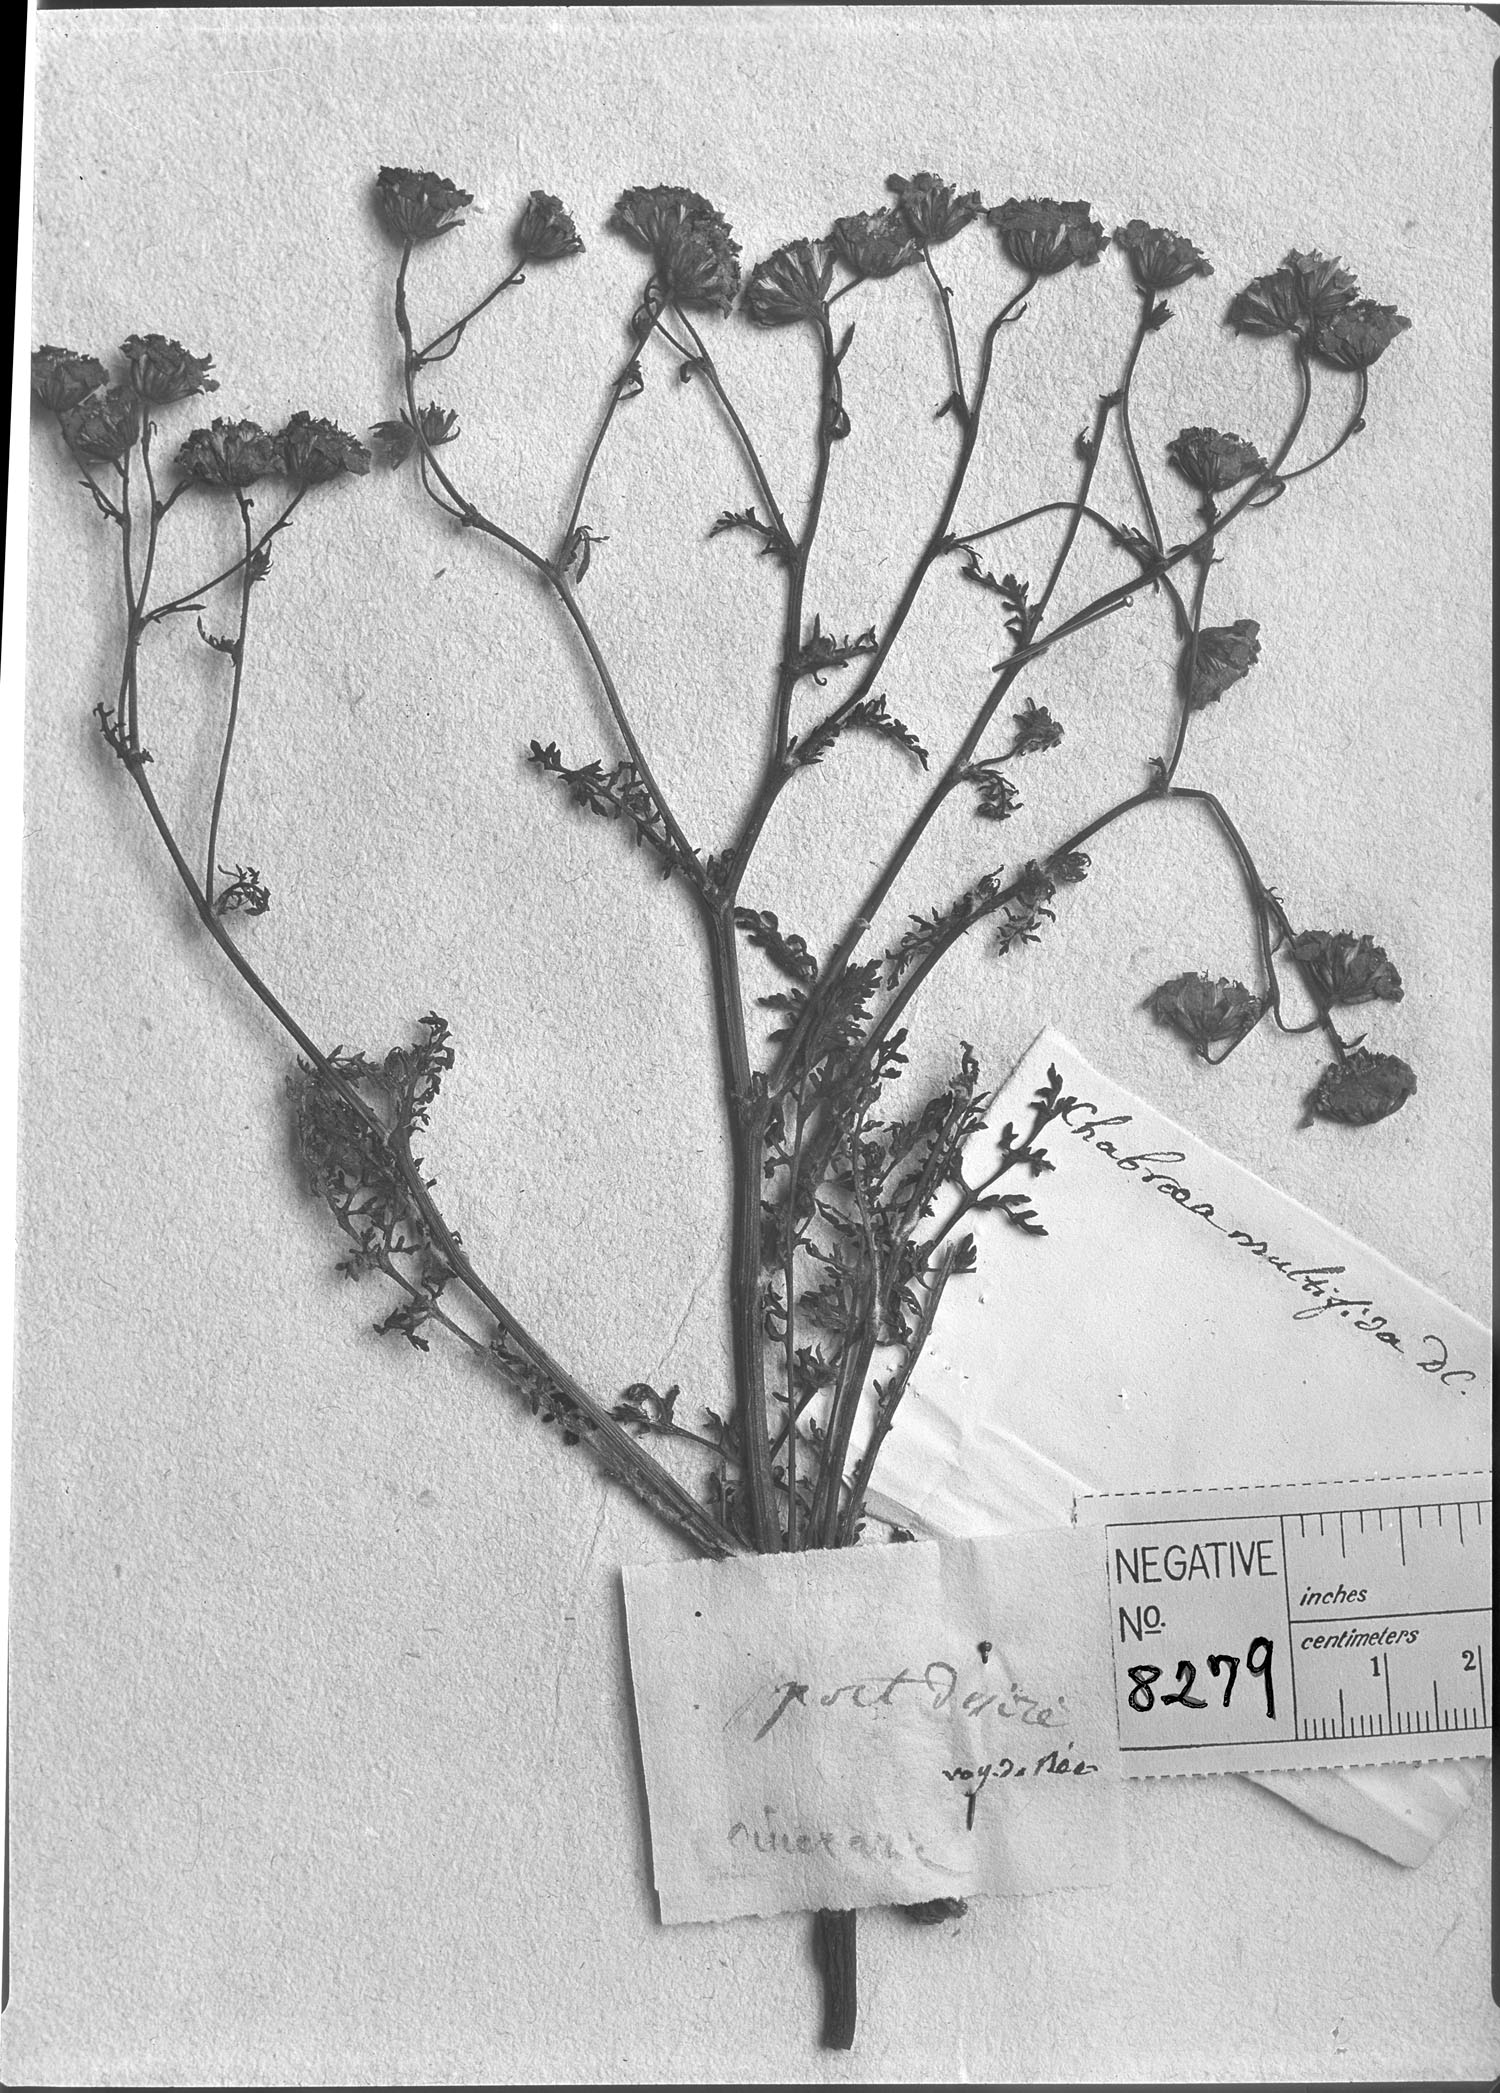 Leucheria achillaeifolia image